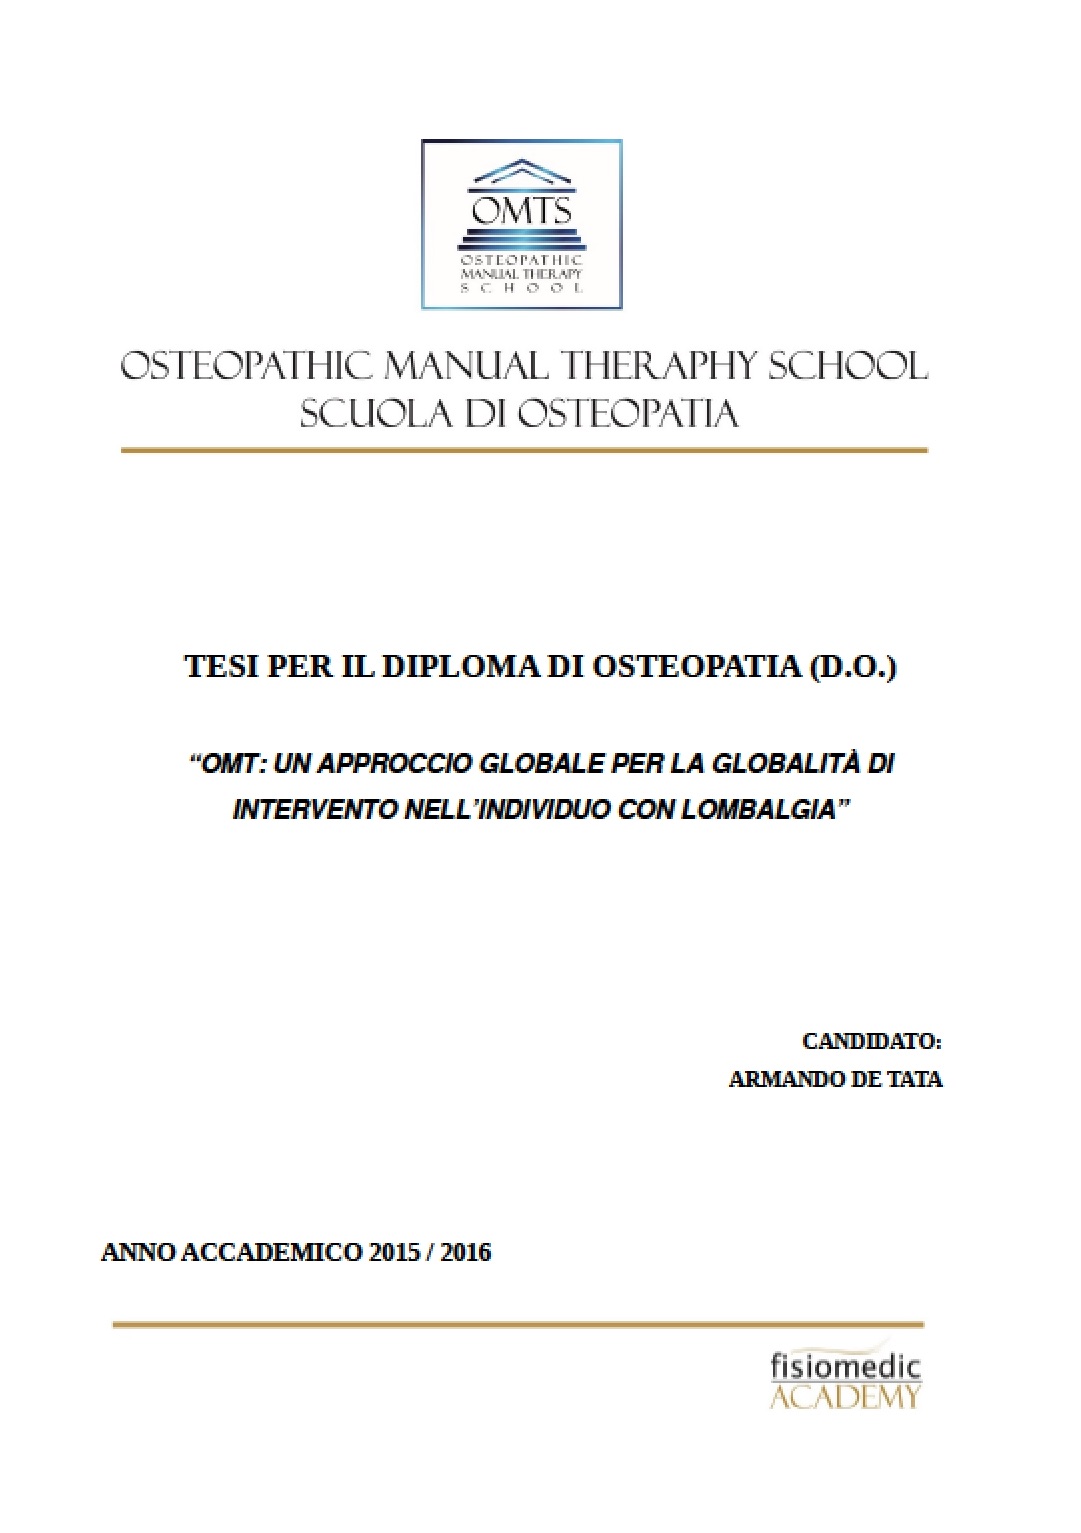 Armando De Tata Tesi Diploma Osteopatia 2016